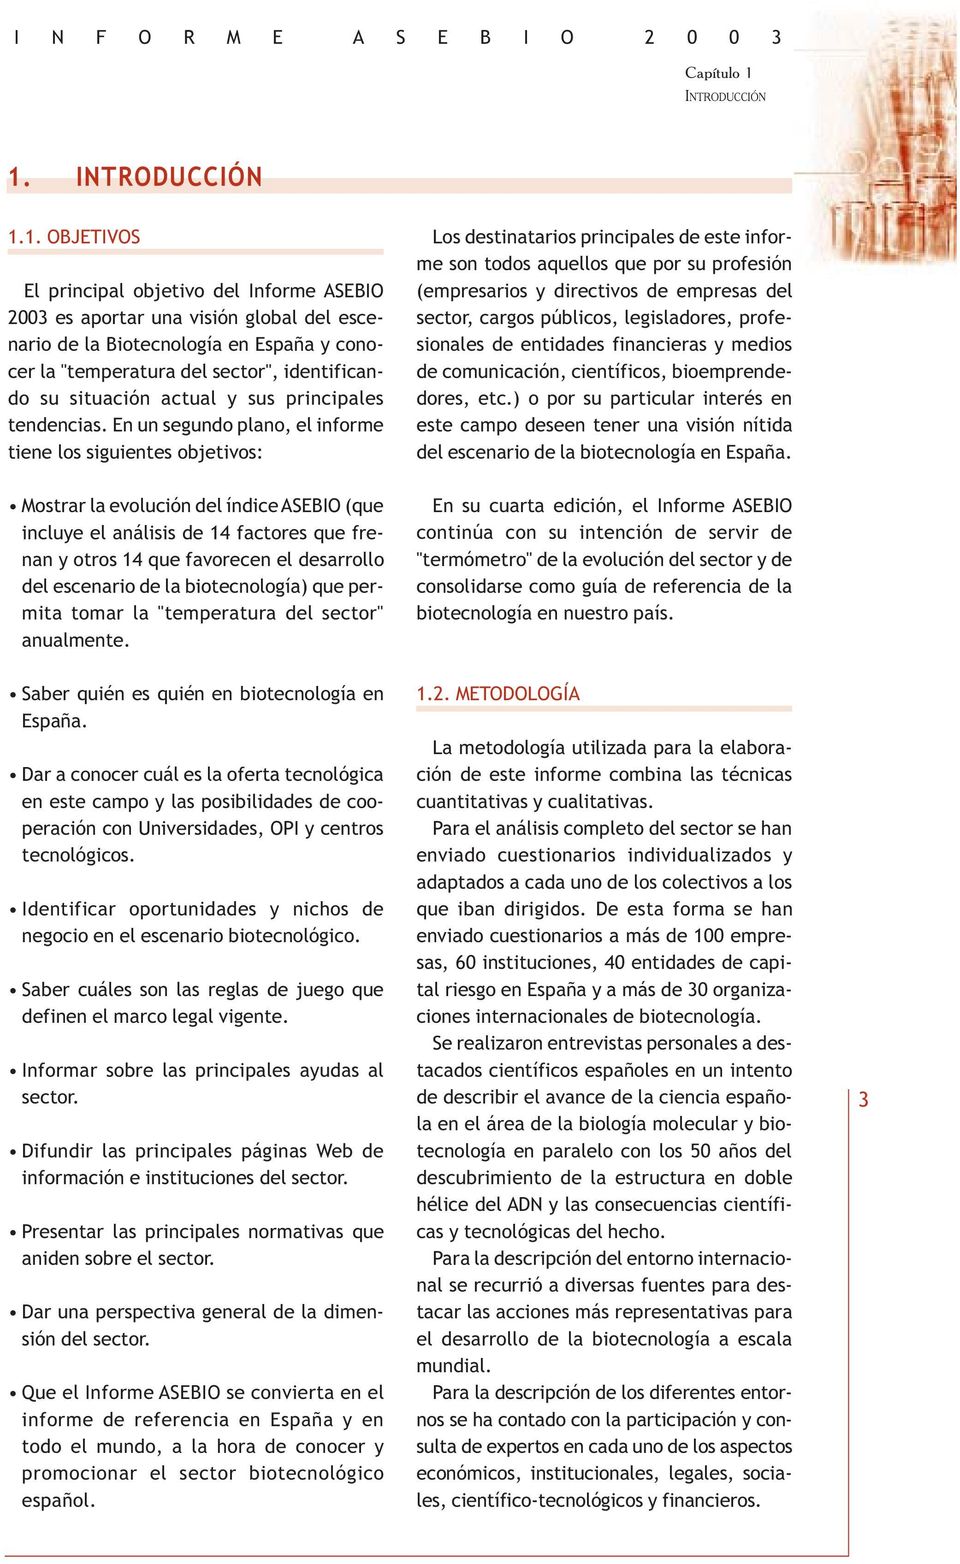 1. OBJETIVOS El principal objetivo del Informe ASEBIO 2003 es aportar una visión global del escenario de la Biotecnología en España y conocer la "temperatura del sector", identificando su situación